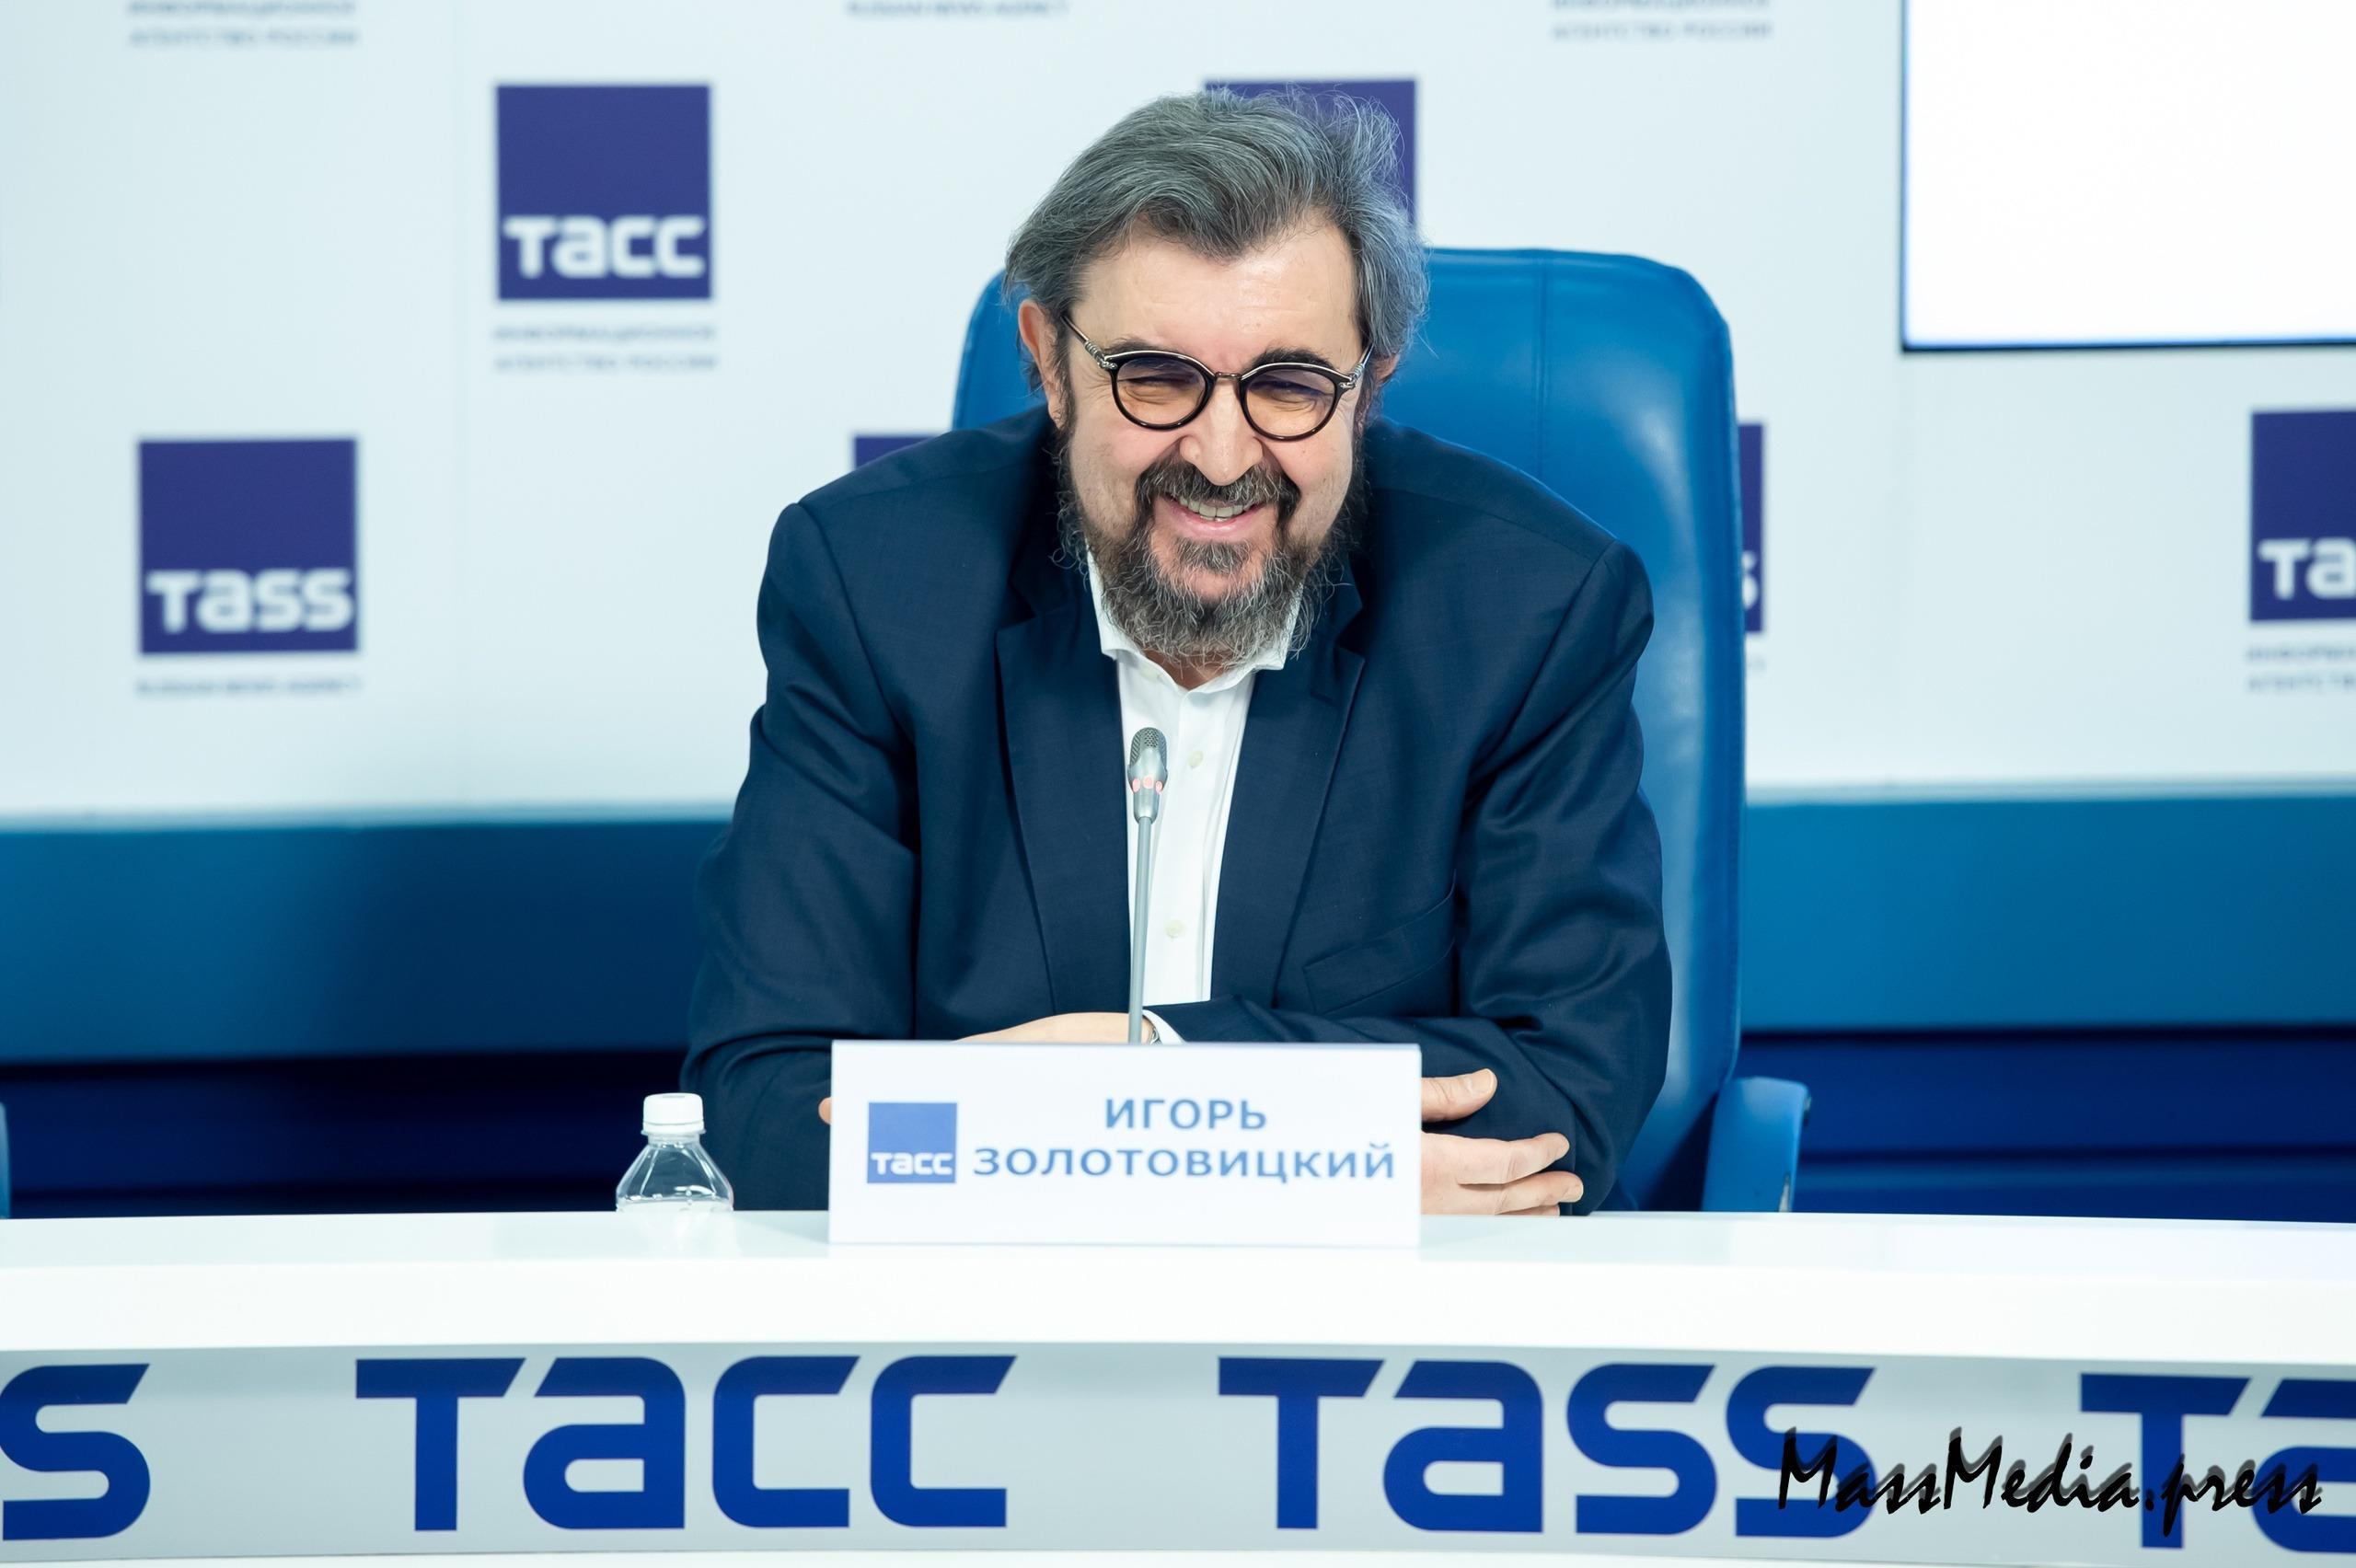 В ТАССе прошла пресс-конференция руководителя МХТ - Константина Хабенского